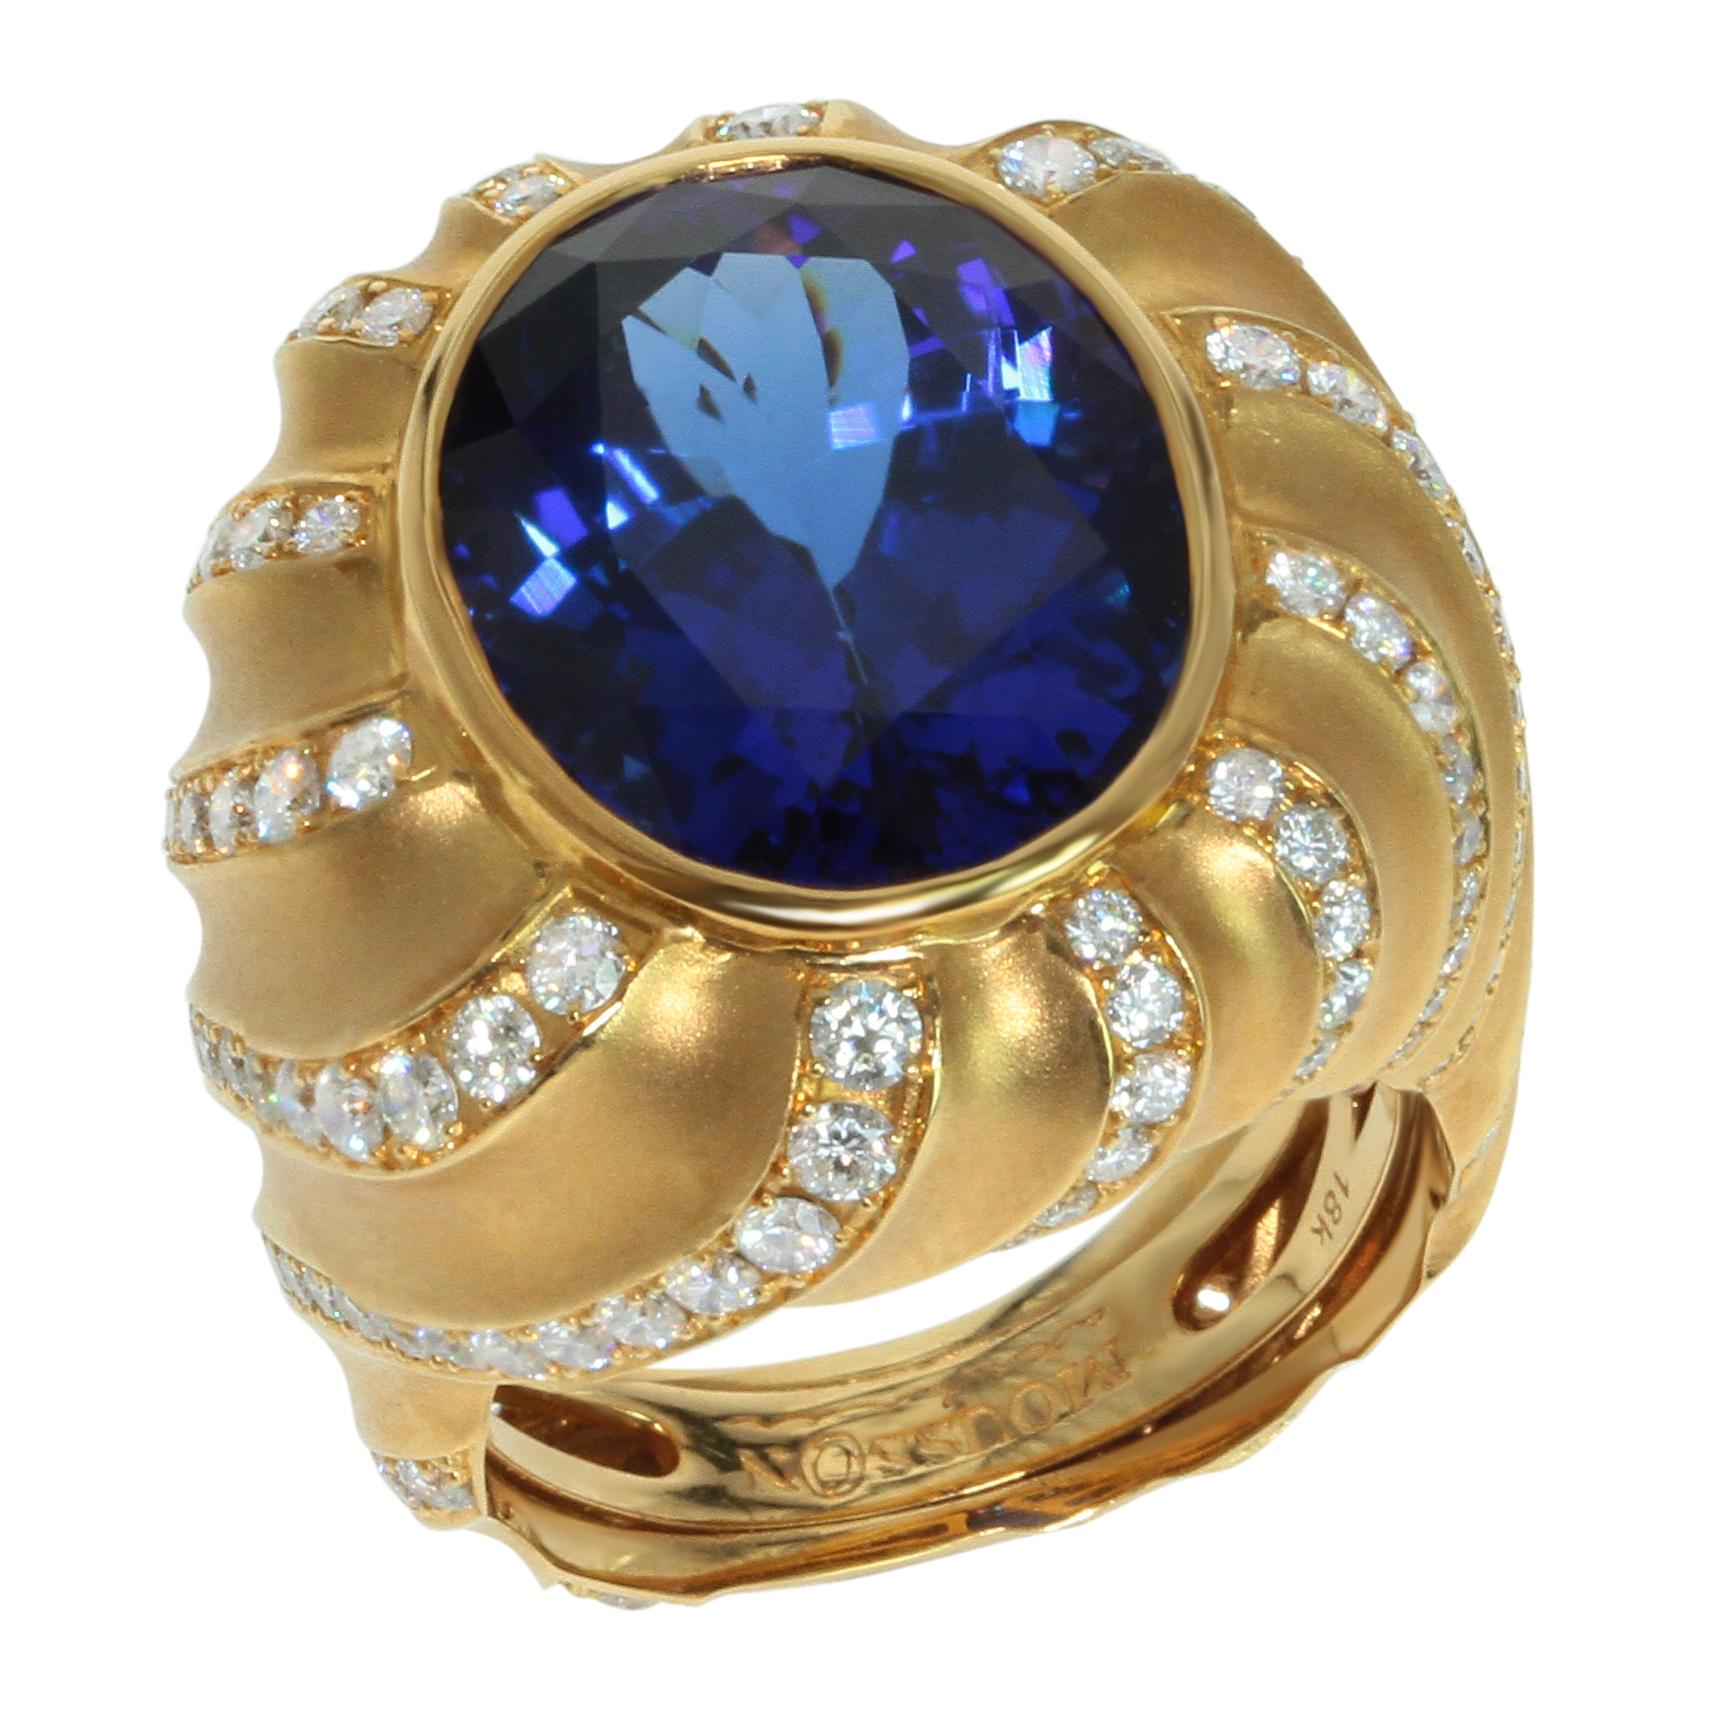 Tanzanite 15.86 carat Diamond 18 Karat Yellow Gold Ring

Just take a look on this rich 